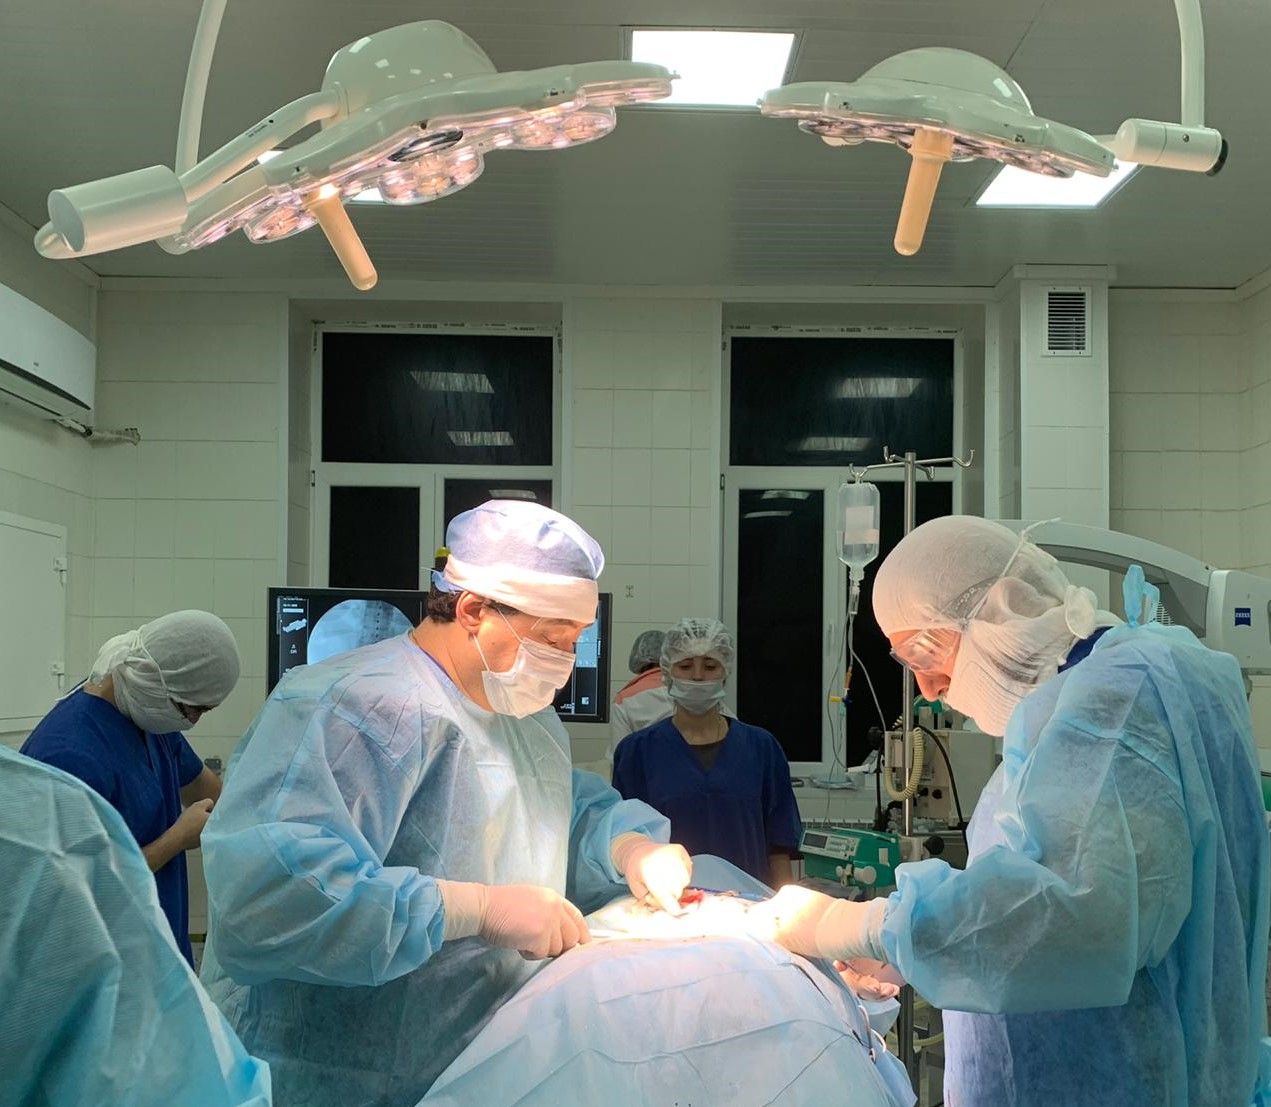 Бурденко москва отделение нейрохирургии